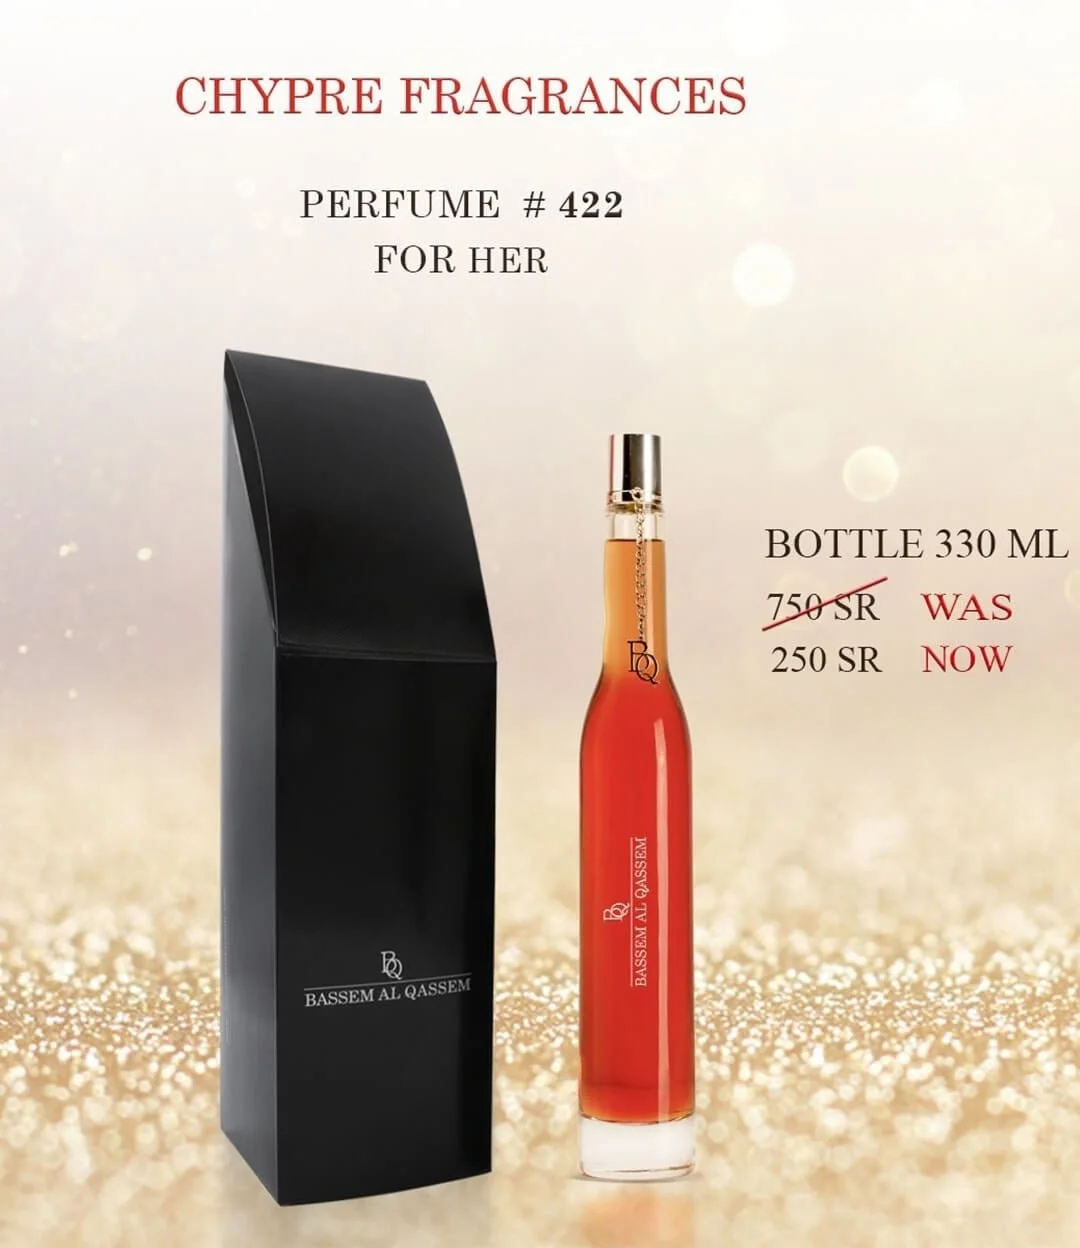 Perfume #422 Chypre Fragrance for Him by Bassem Al Qassem 